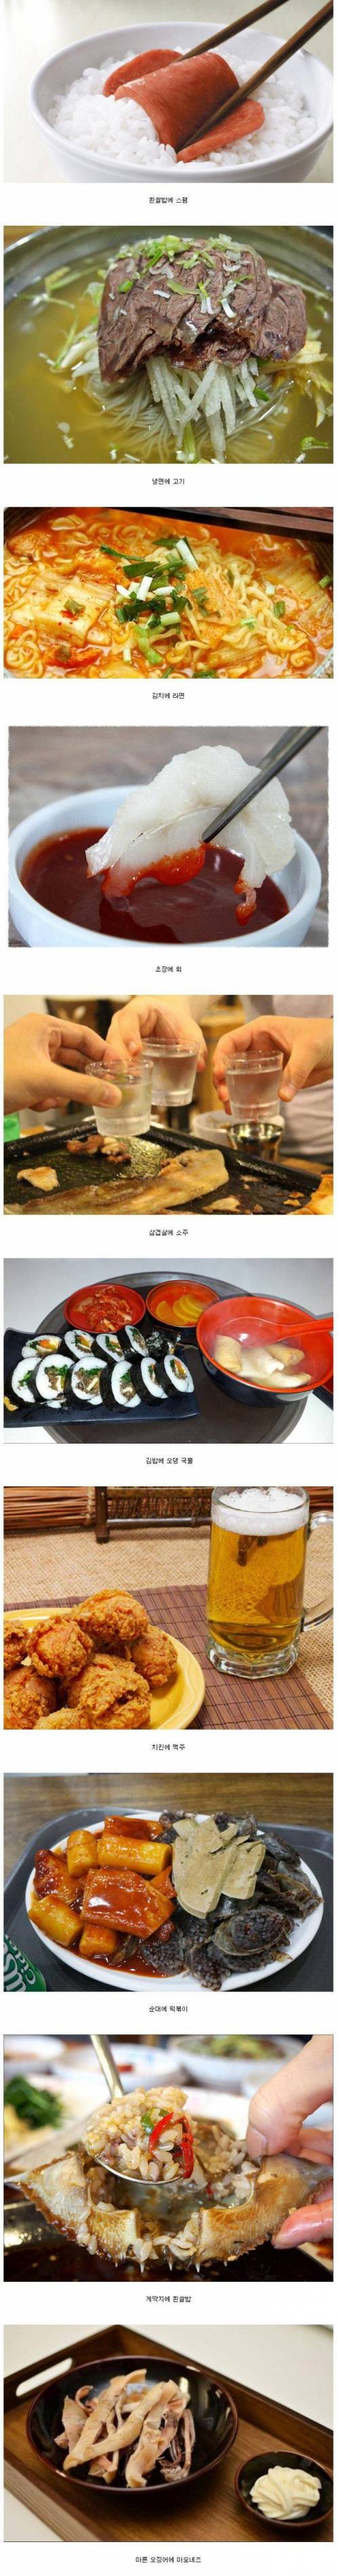 한국인의 음식 궁합.jpg